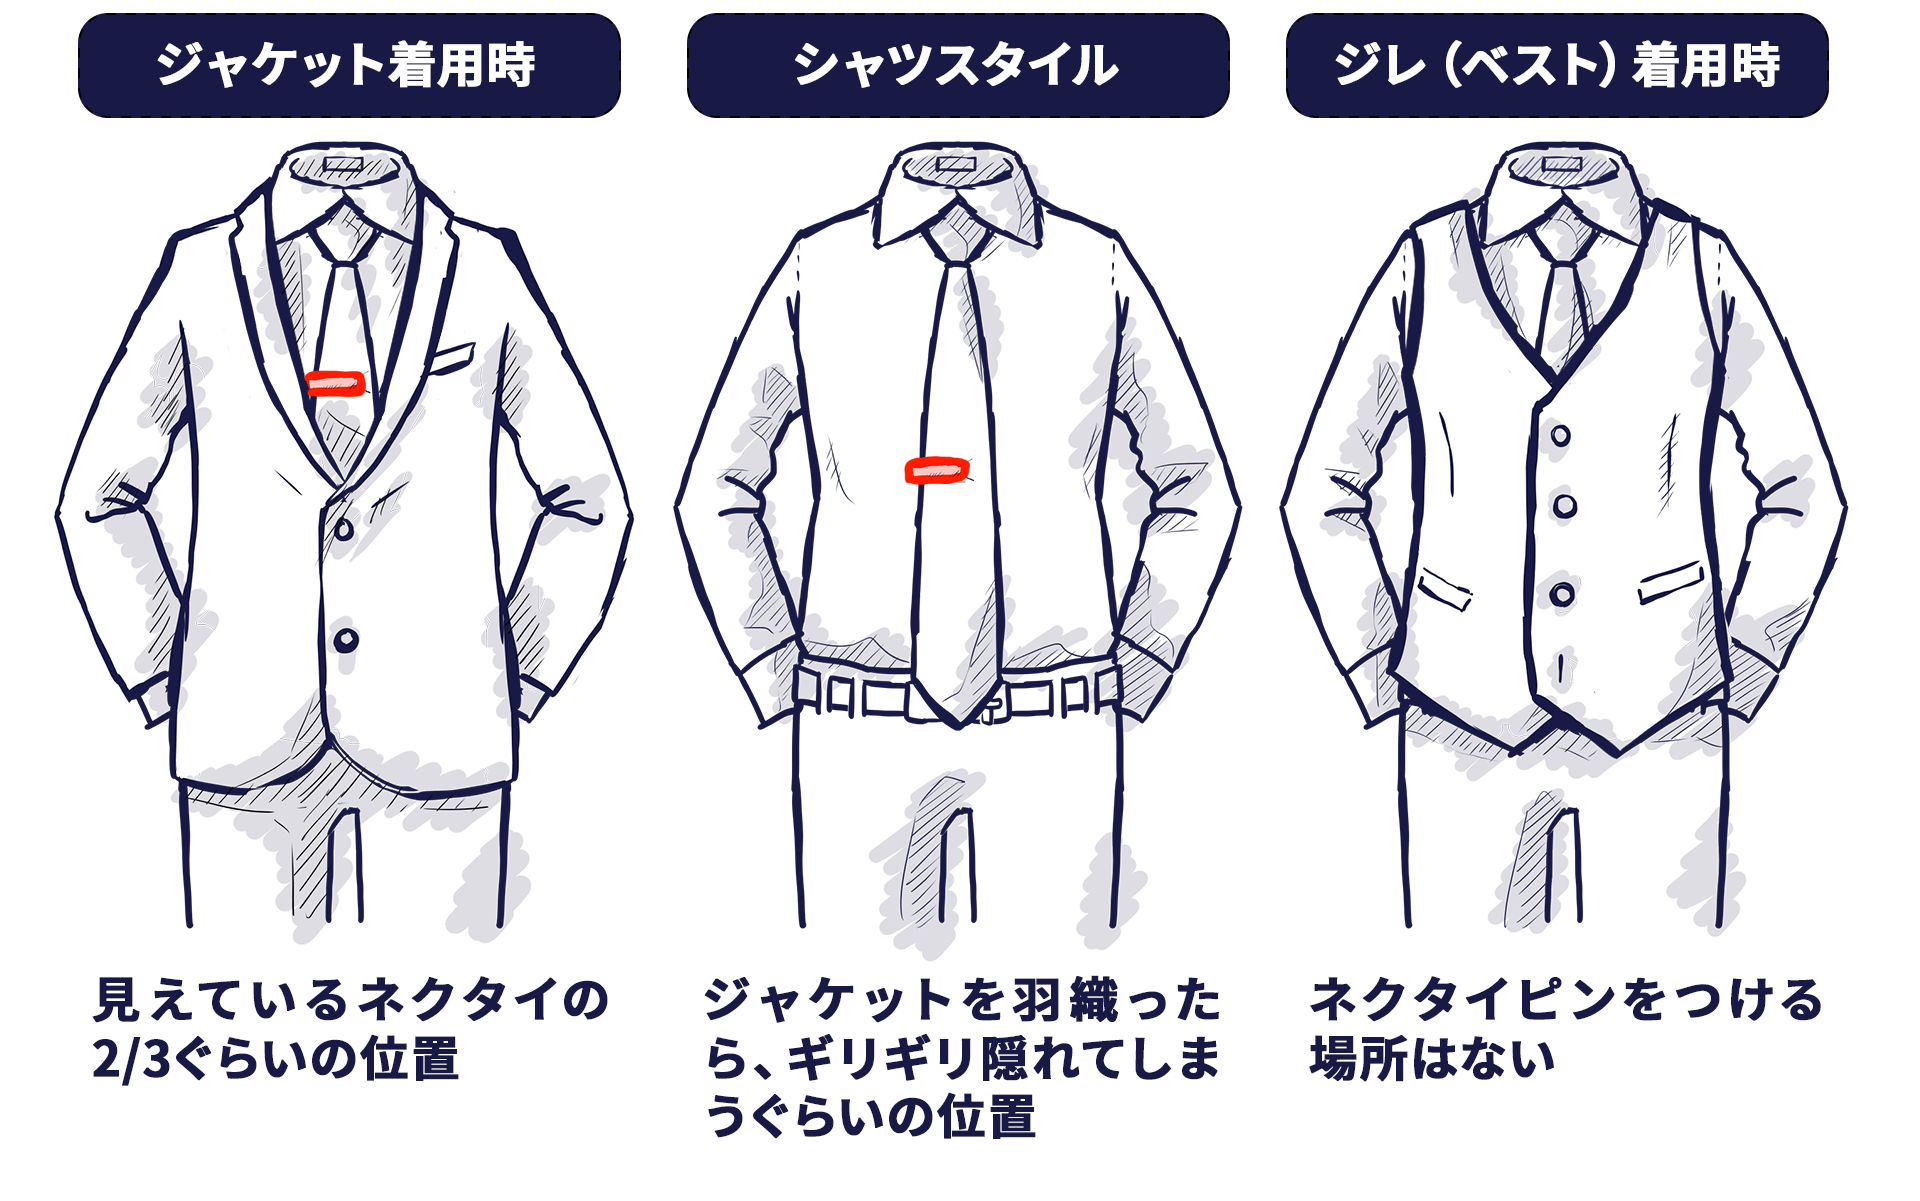 ジャケットを着ているときのネクタイピンは、ネクタイの3分の2ぐらいの位置。シャツスタイルのときは、ジャケットをきたときに丁度隠れるぐらいの位置。ジレ（ベスト）を着た時はネクタイピンをつけません。